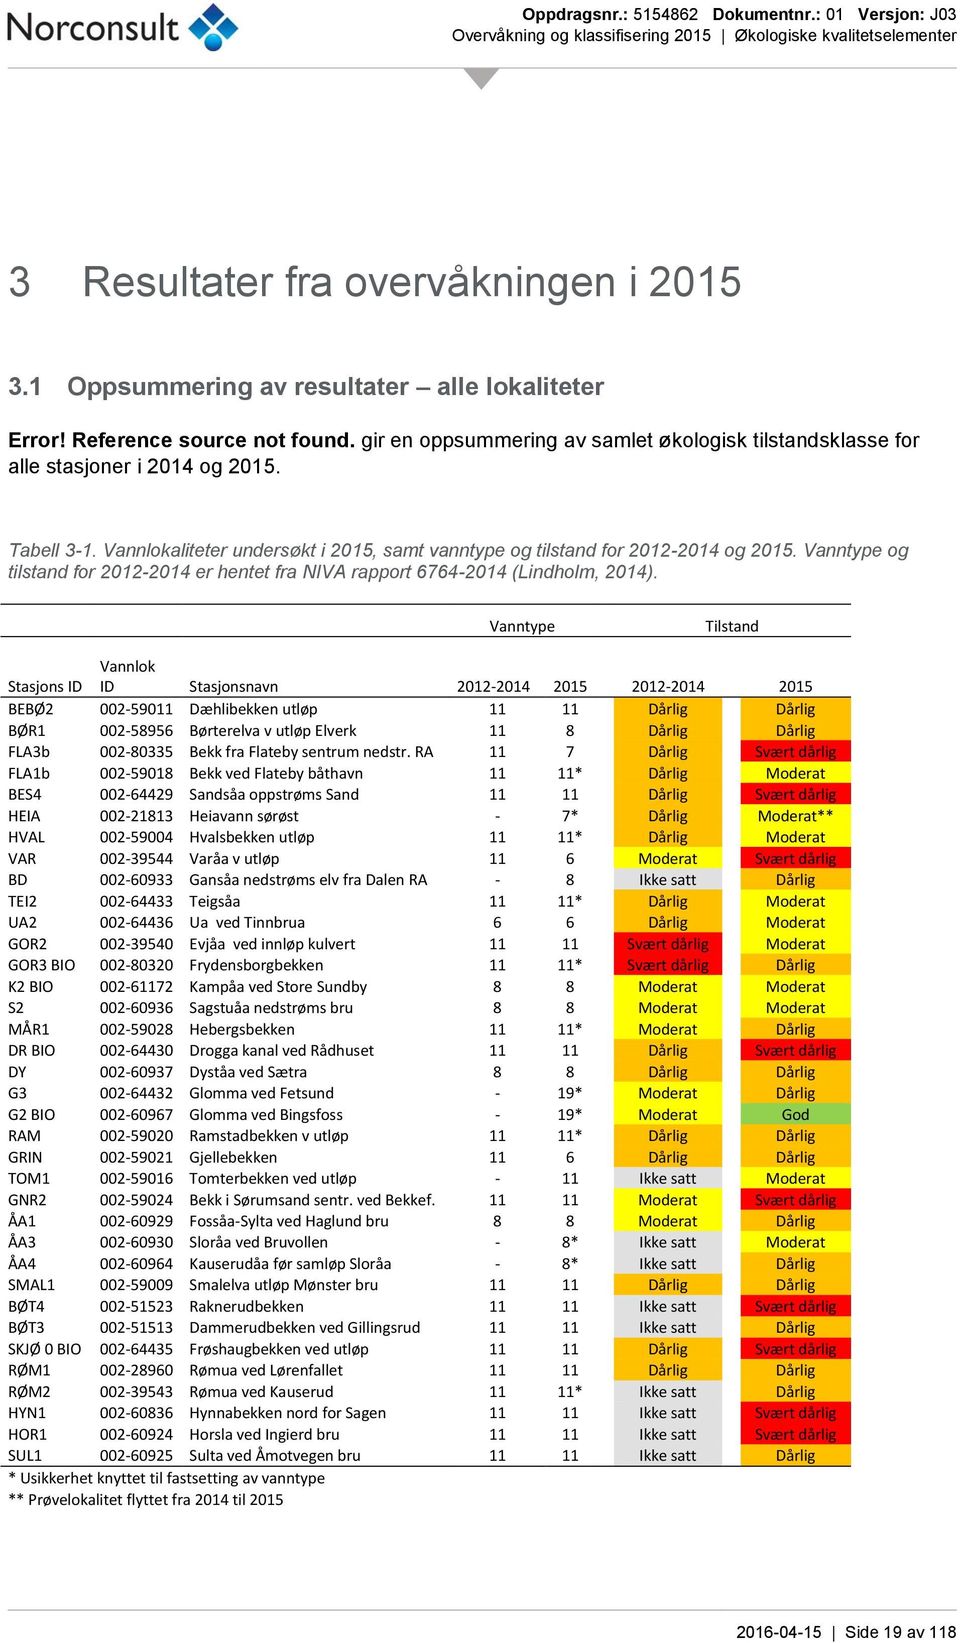 Vanntype og tilstand for 2012-2014 er hentet fra NIVA rapport 6764-2014 (Lindholm, 2014).